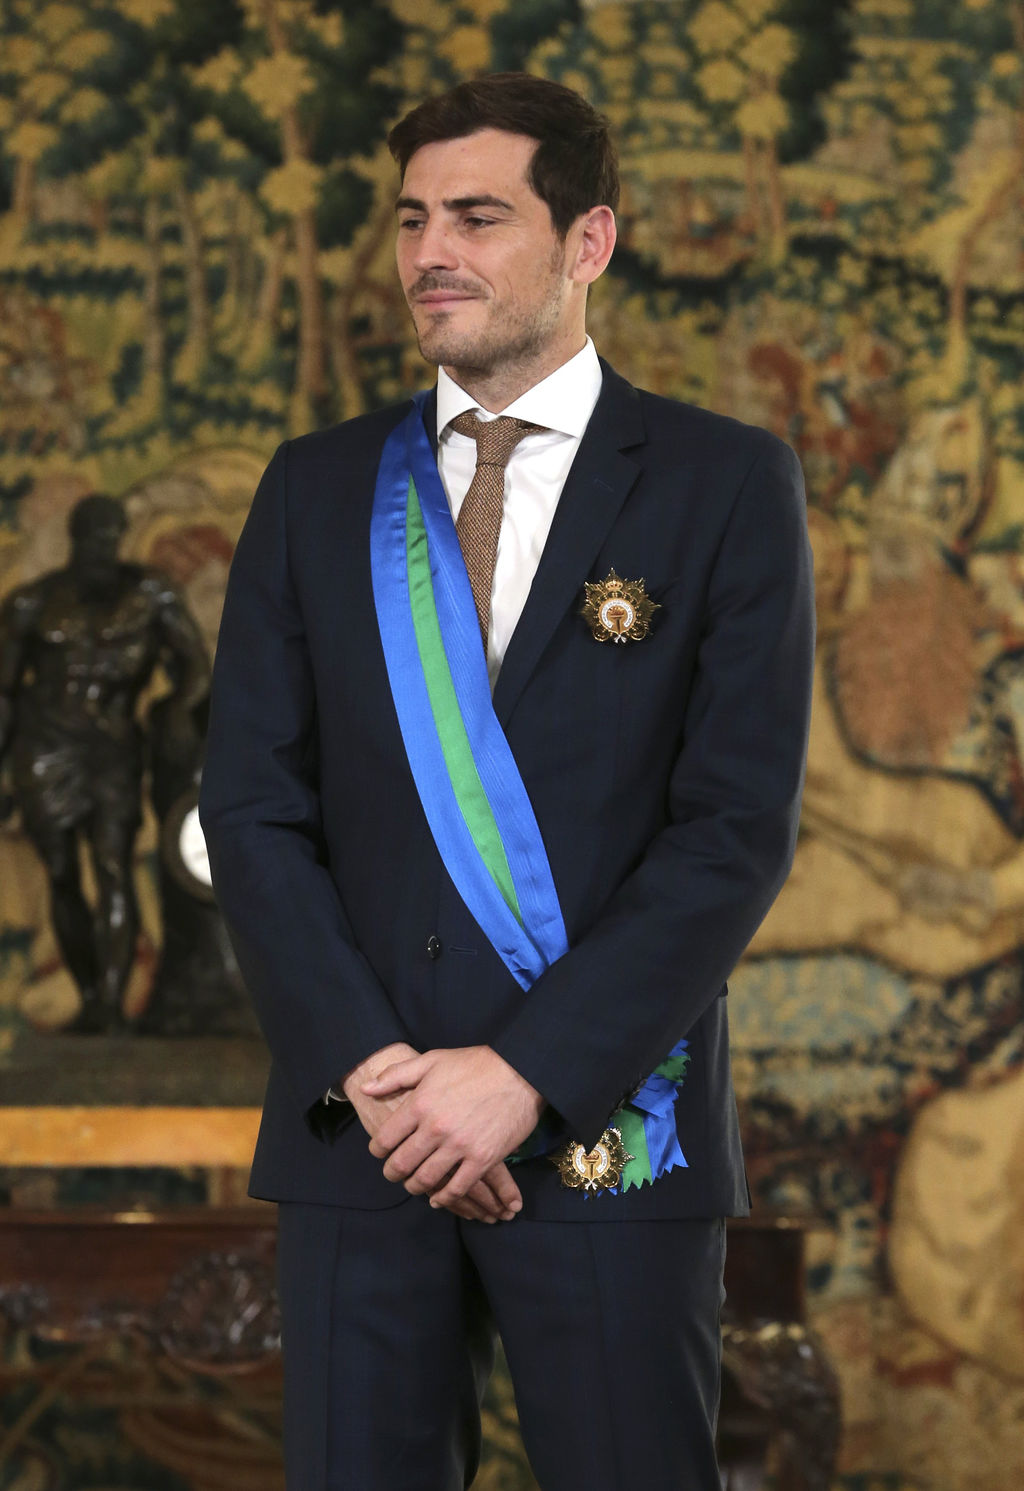 El capitán de la selección española y actual guardameta del Oporto luso, recibió en el Palacio de La Moncloa, de manos de Mariano Rajoy, presidente del Gobierno, la Gran Cruz de la Real Orden del Mérito Deportivo.